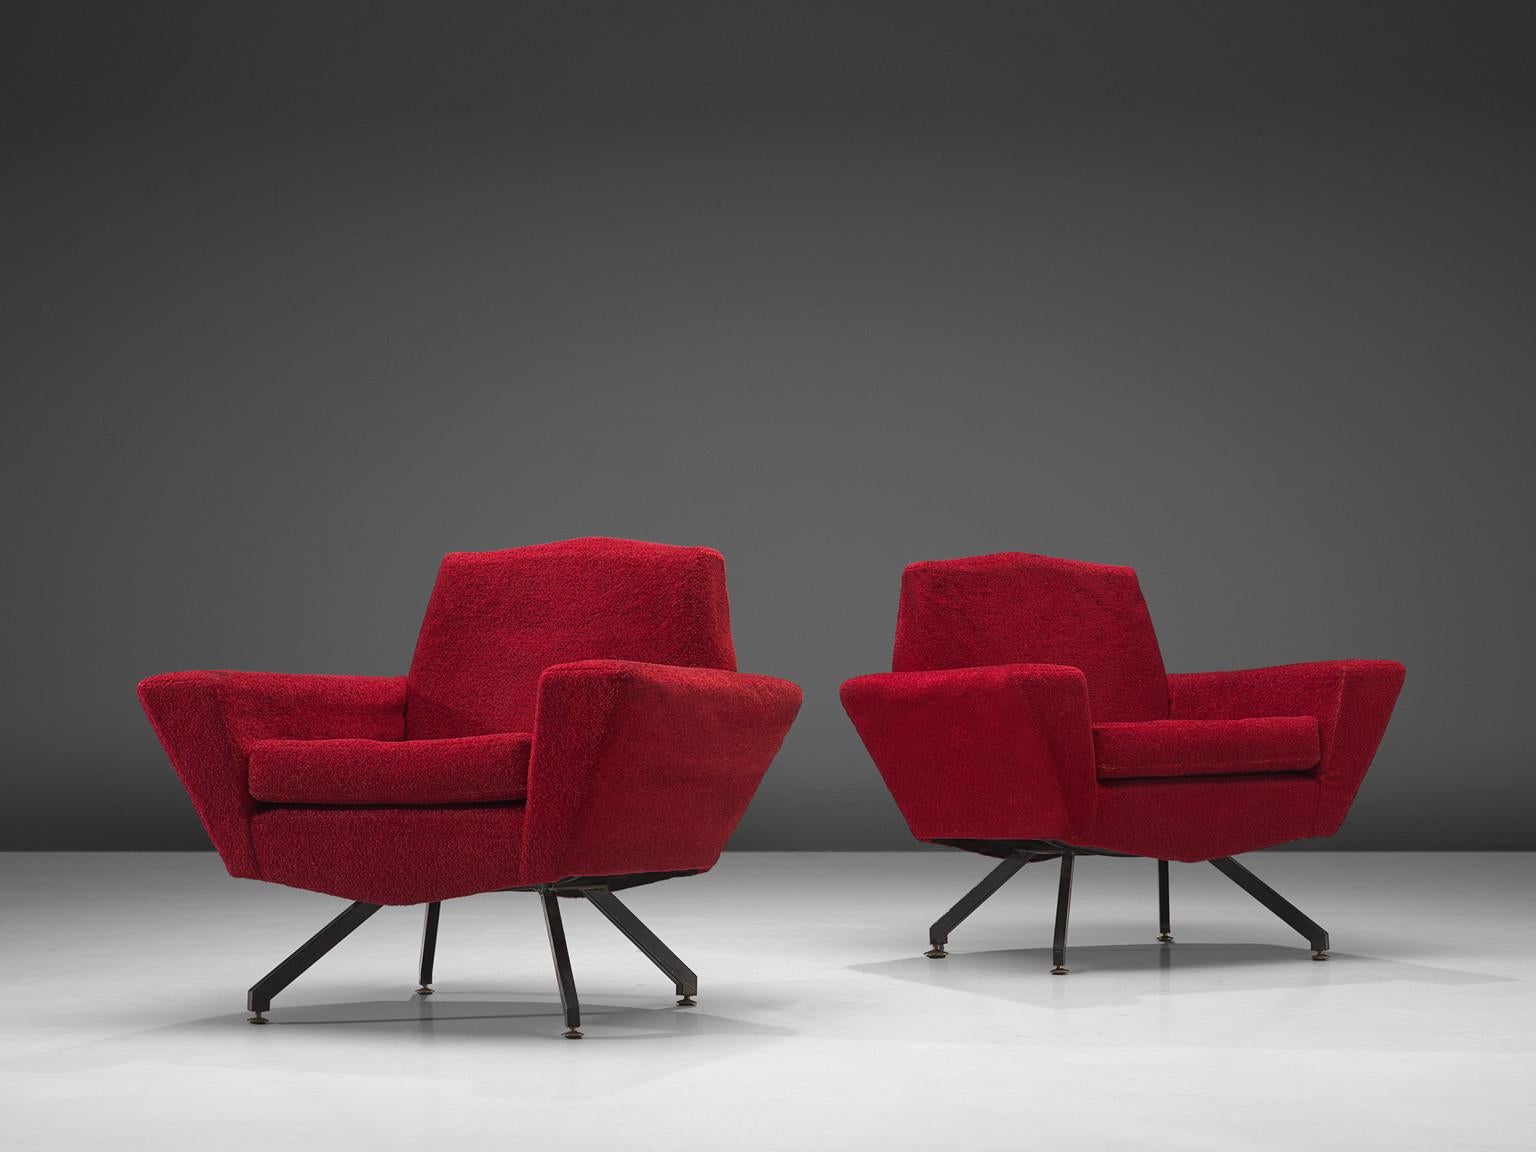 Studio APA für Lenzi, Paar Clubsessel Modell 'M538', Stoff, Metall, Messing, Italien, 1960er Jahre

Dieses dynamische Sesselpaar stammt aus Italien und zeichnet sich durch eine wohlproportionierte Konstruktion mit scharfen Winkeln und geraden Linien